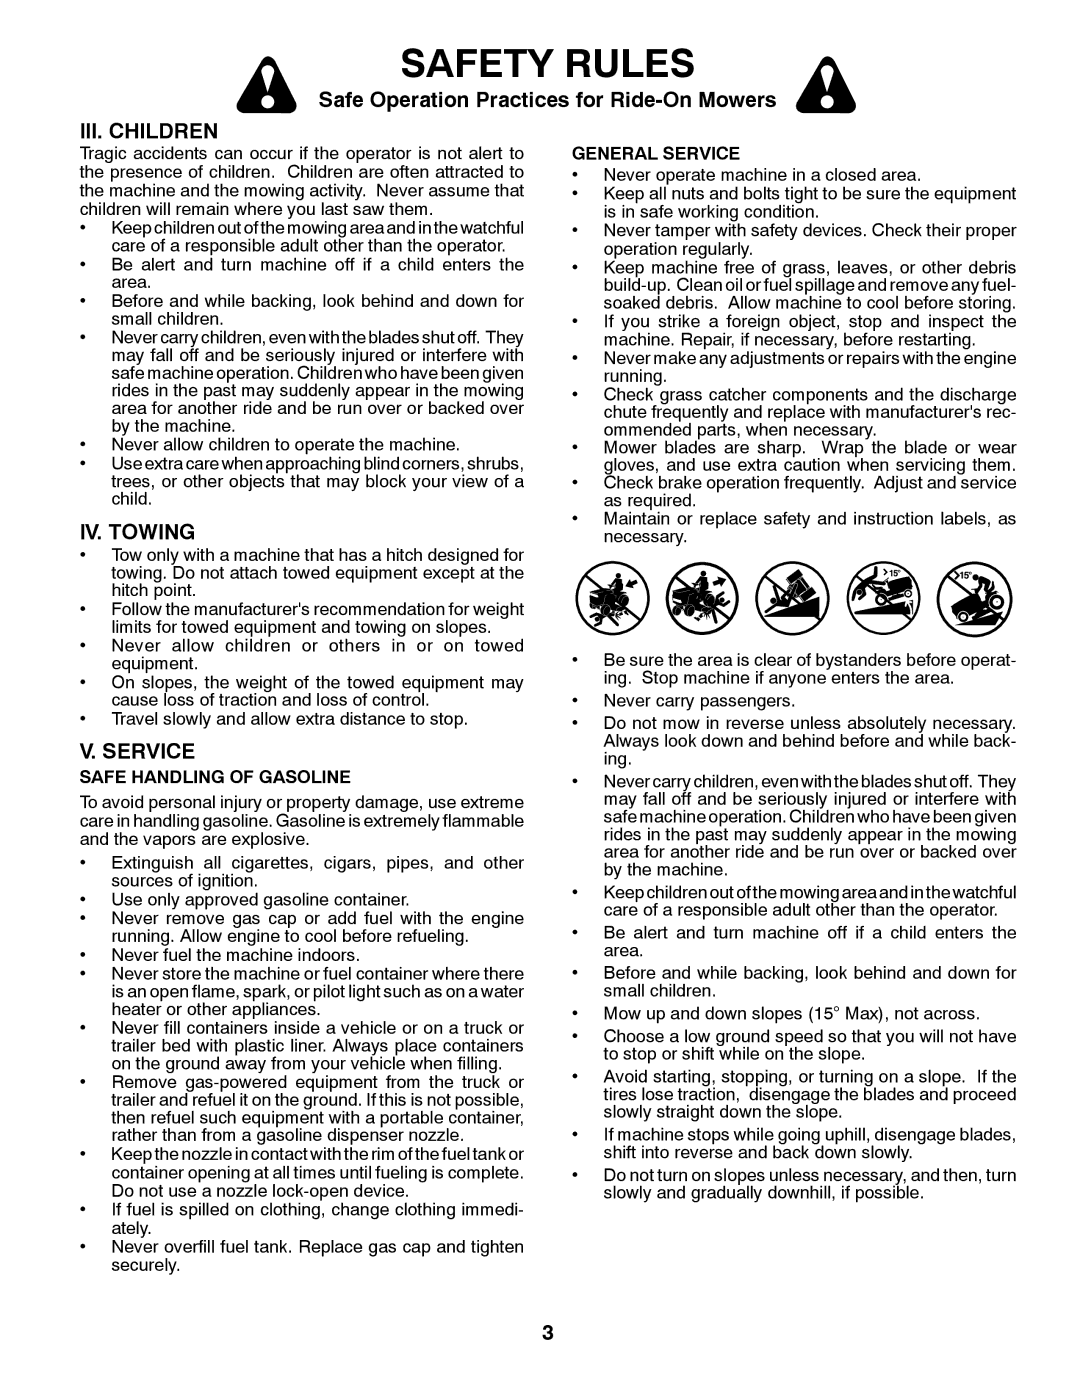 Husqvarna YTH23V48 owner manual III. Children, IV. Towing, Safe Handling of Gasoline, General Service 